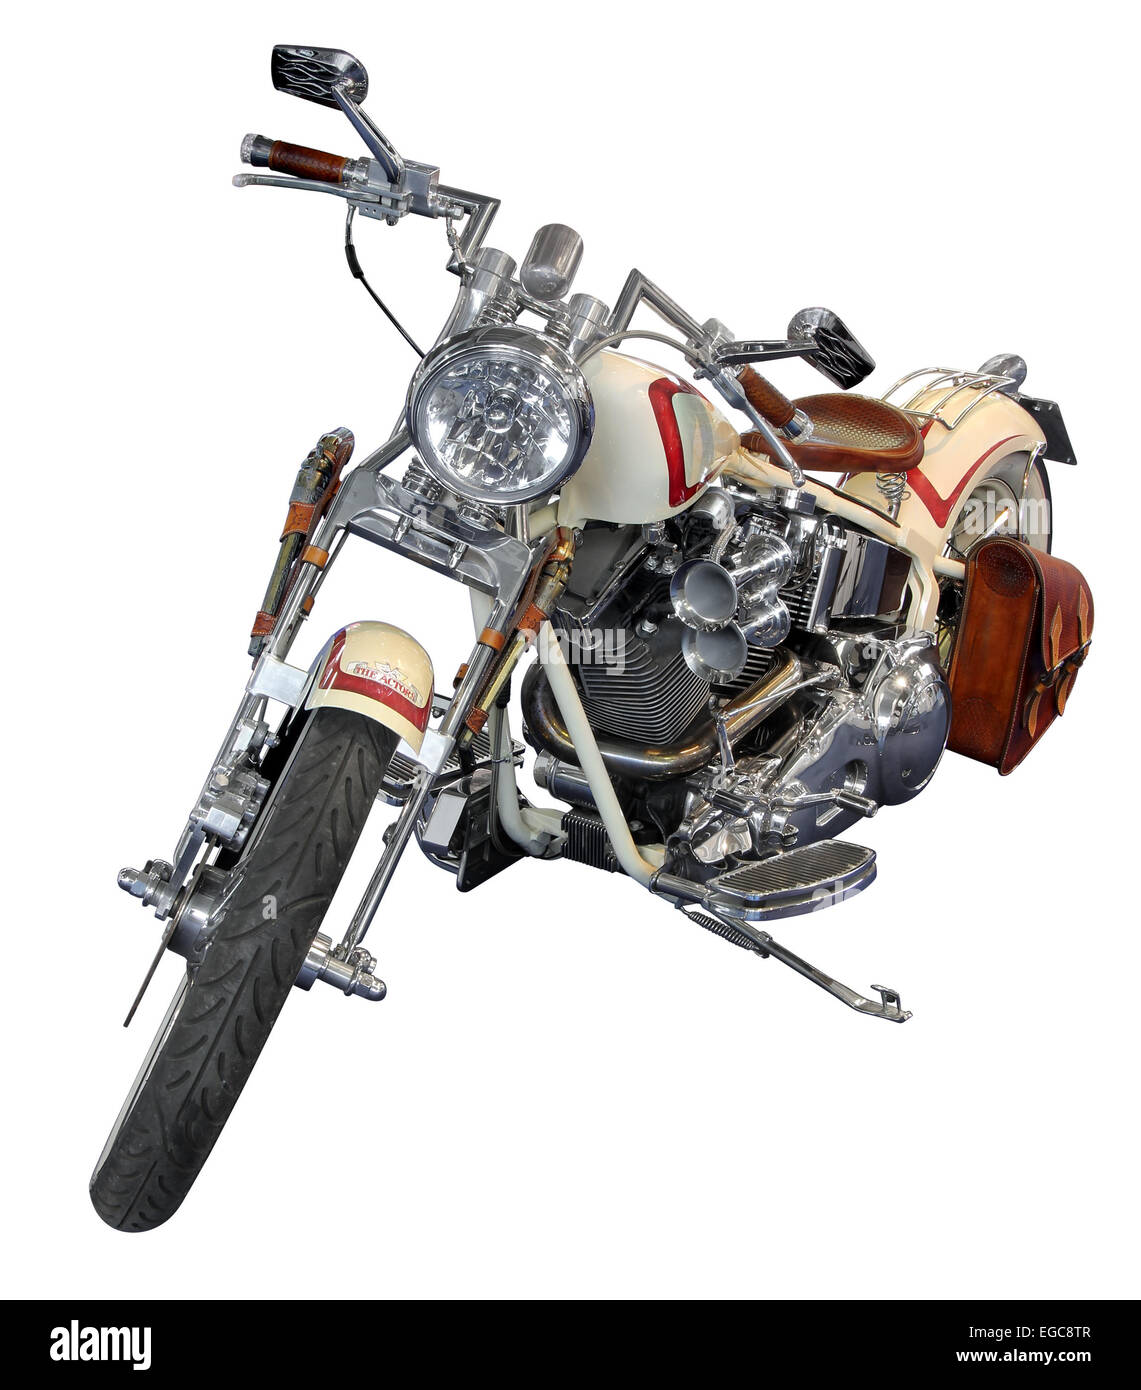 Legendäre Motorrad Harley Davidson isoliert auf weißem Hintergrund mit Beschneidungspfad. Stockfoto